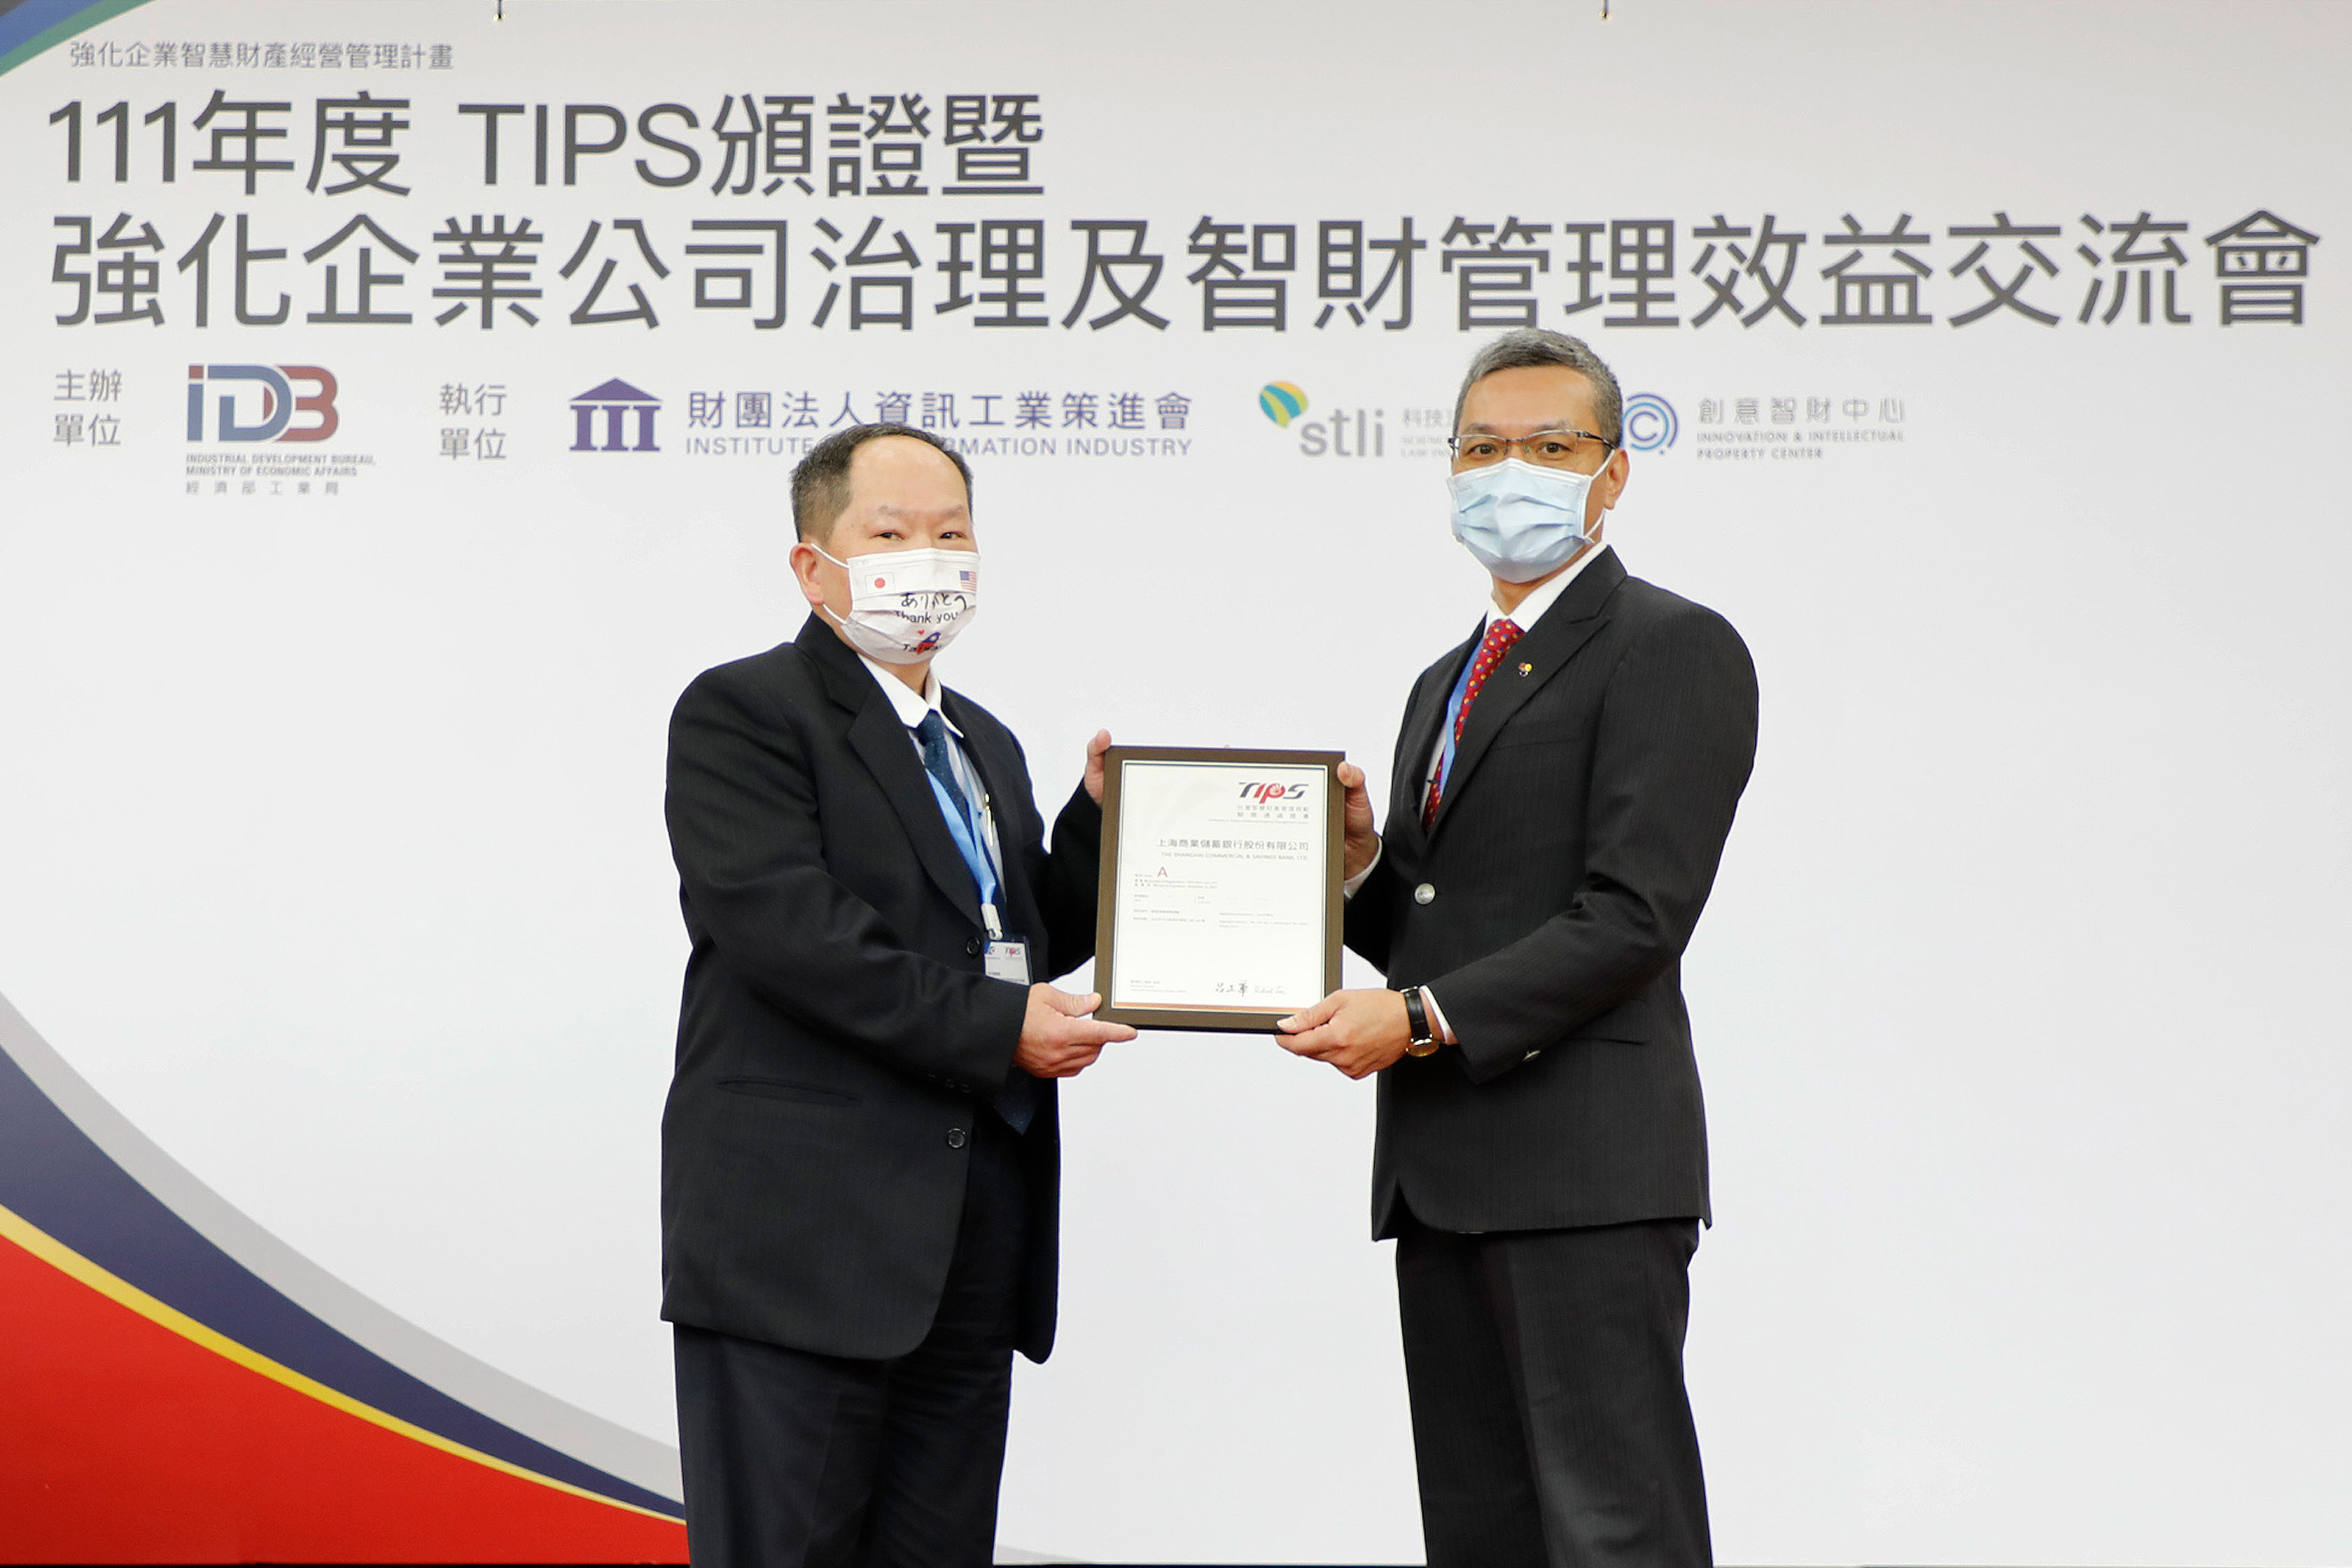 本行連續二年(109及110年)榮獲經濟部工業局舉辦之台灣智慧財產管理制度(TIPS)A級認證，今日舉行頒證典禮。